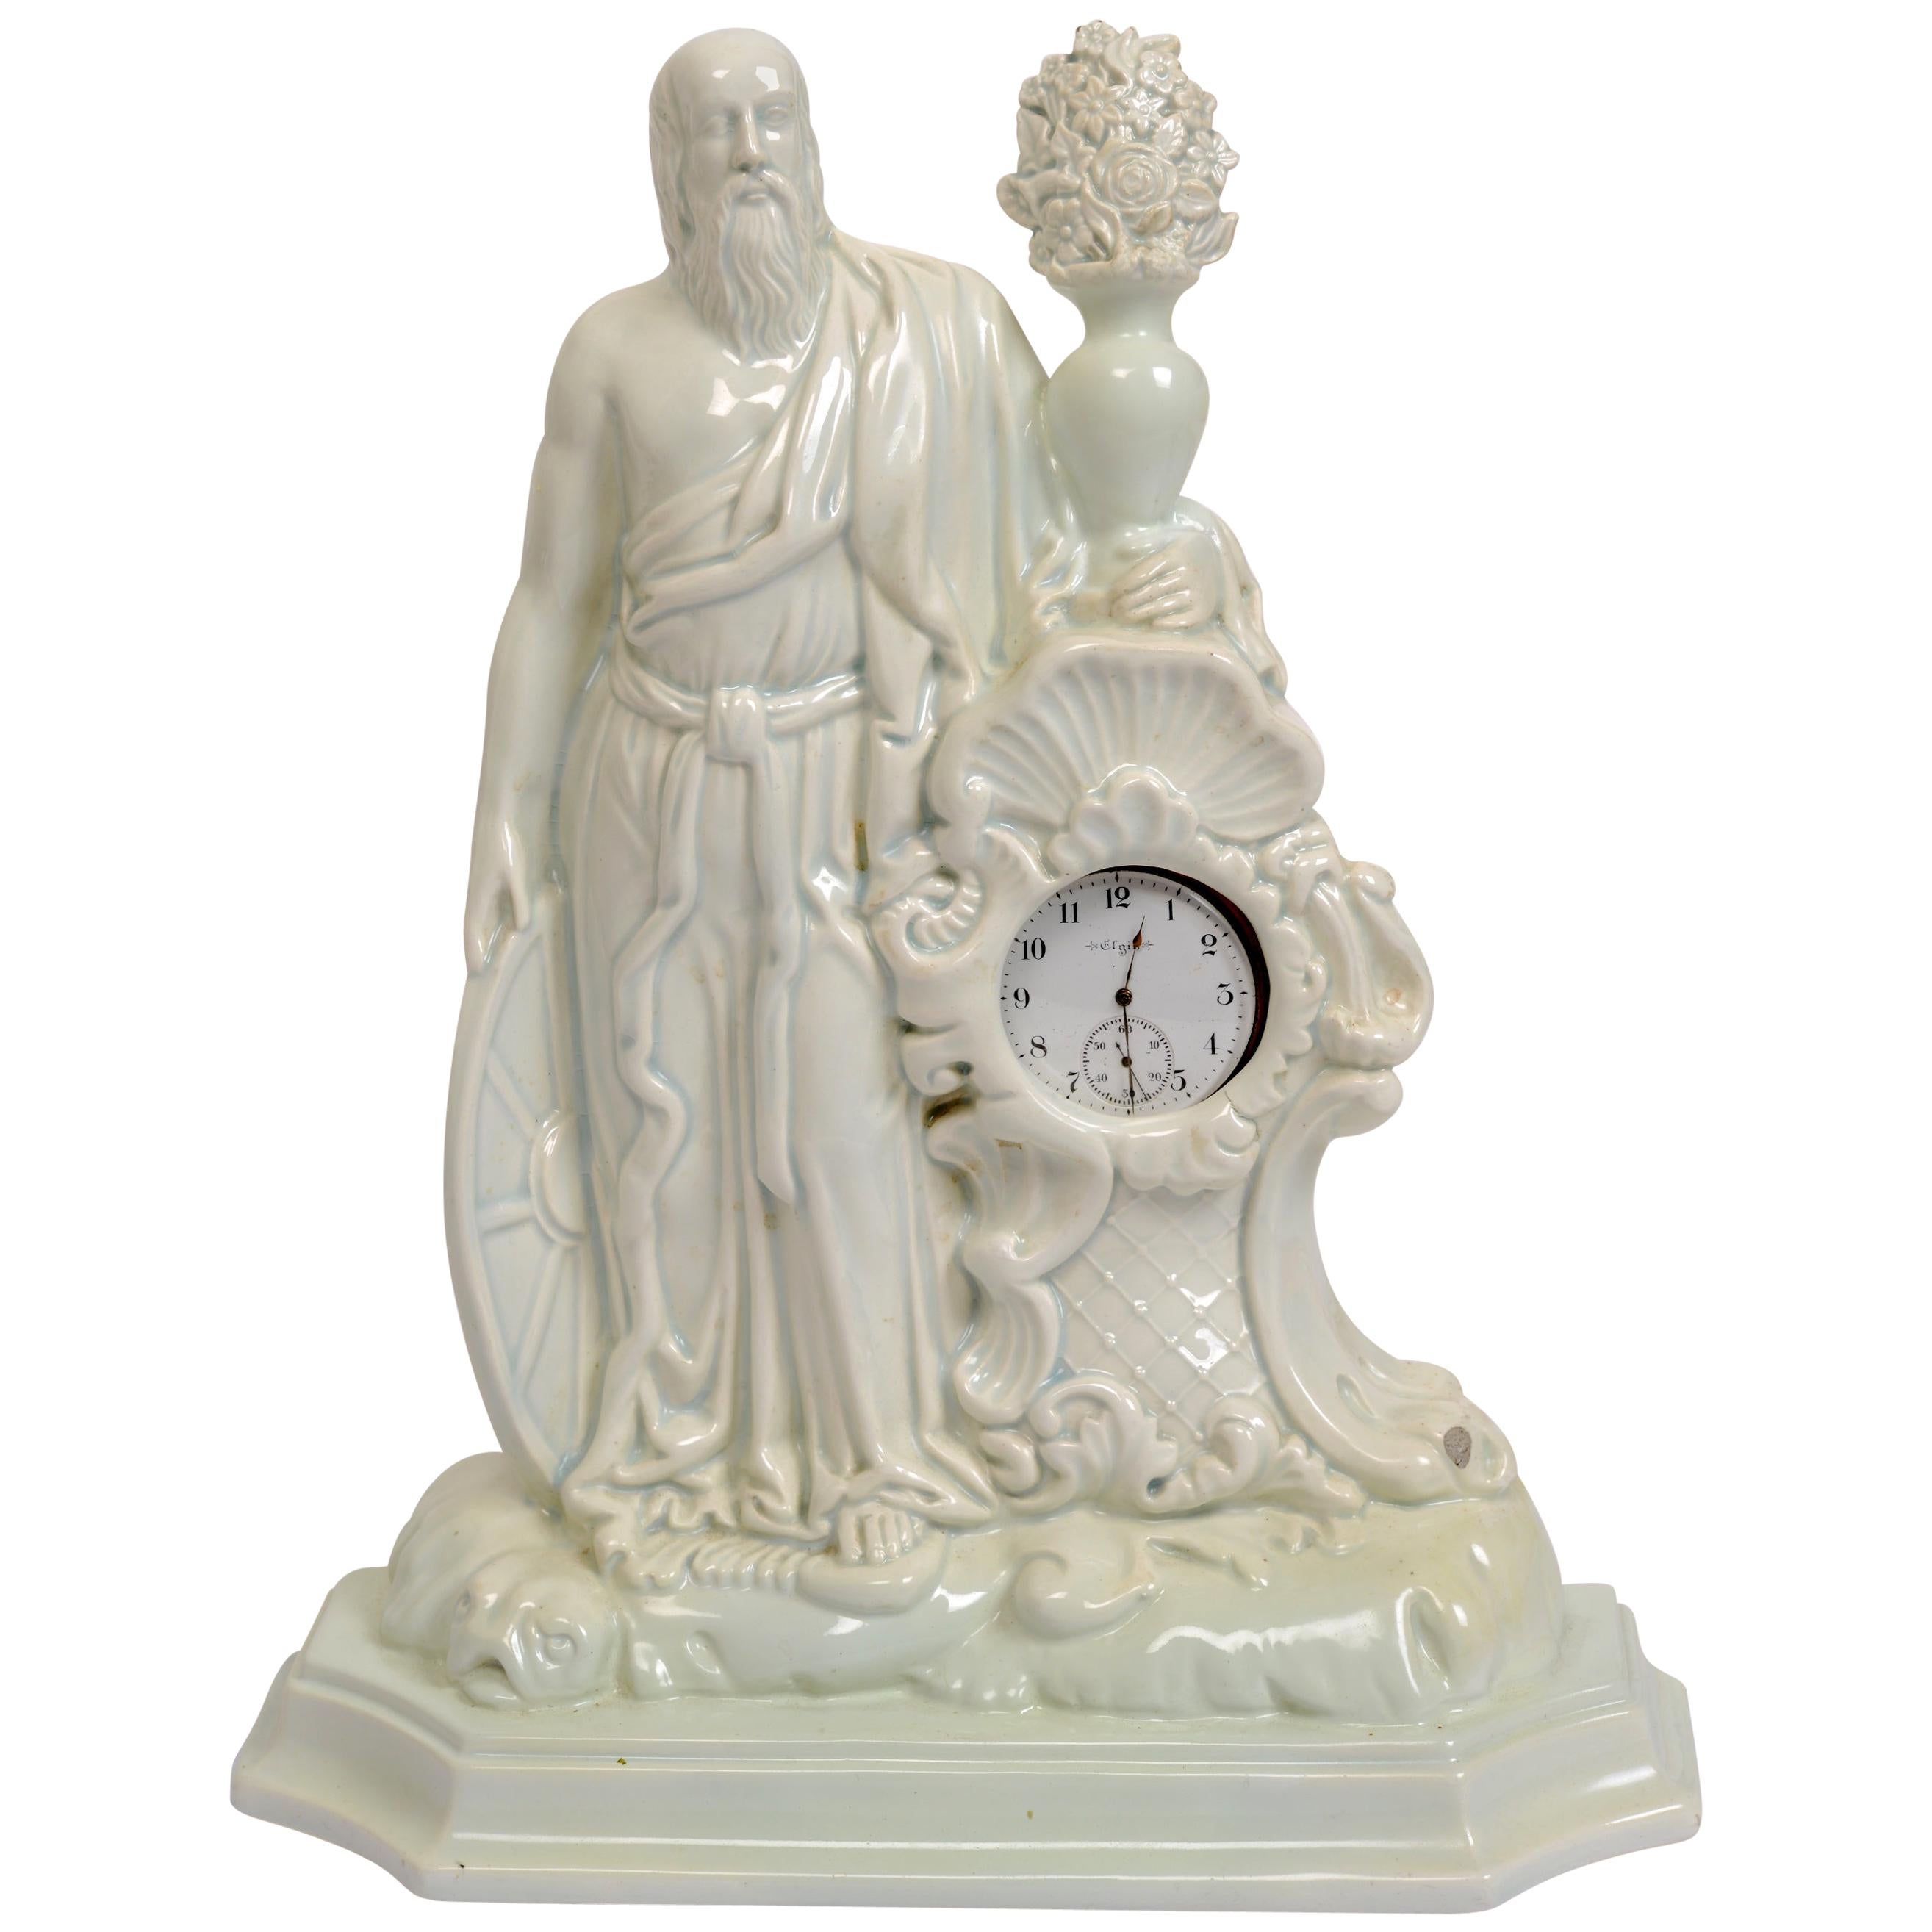 Porte-montre italien de la fin du XVIIIe siècle avec l'heure des pères